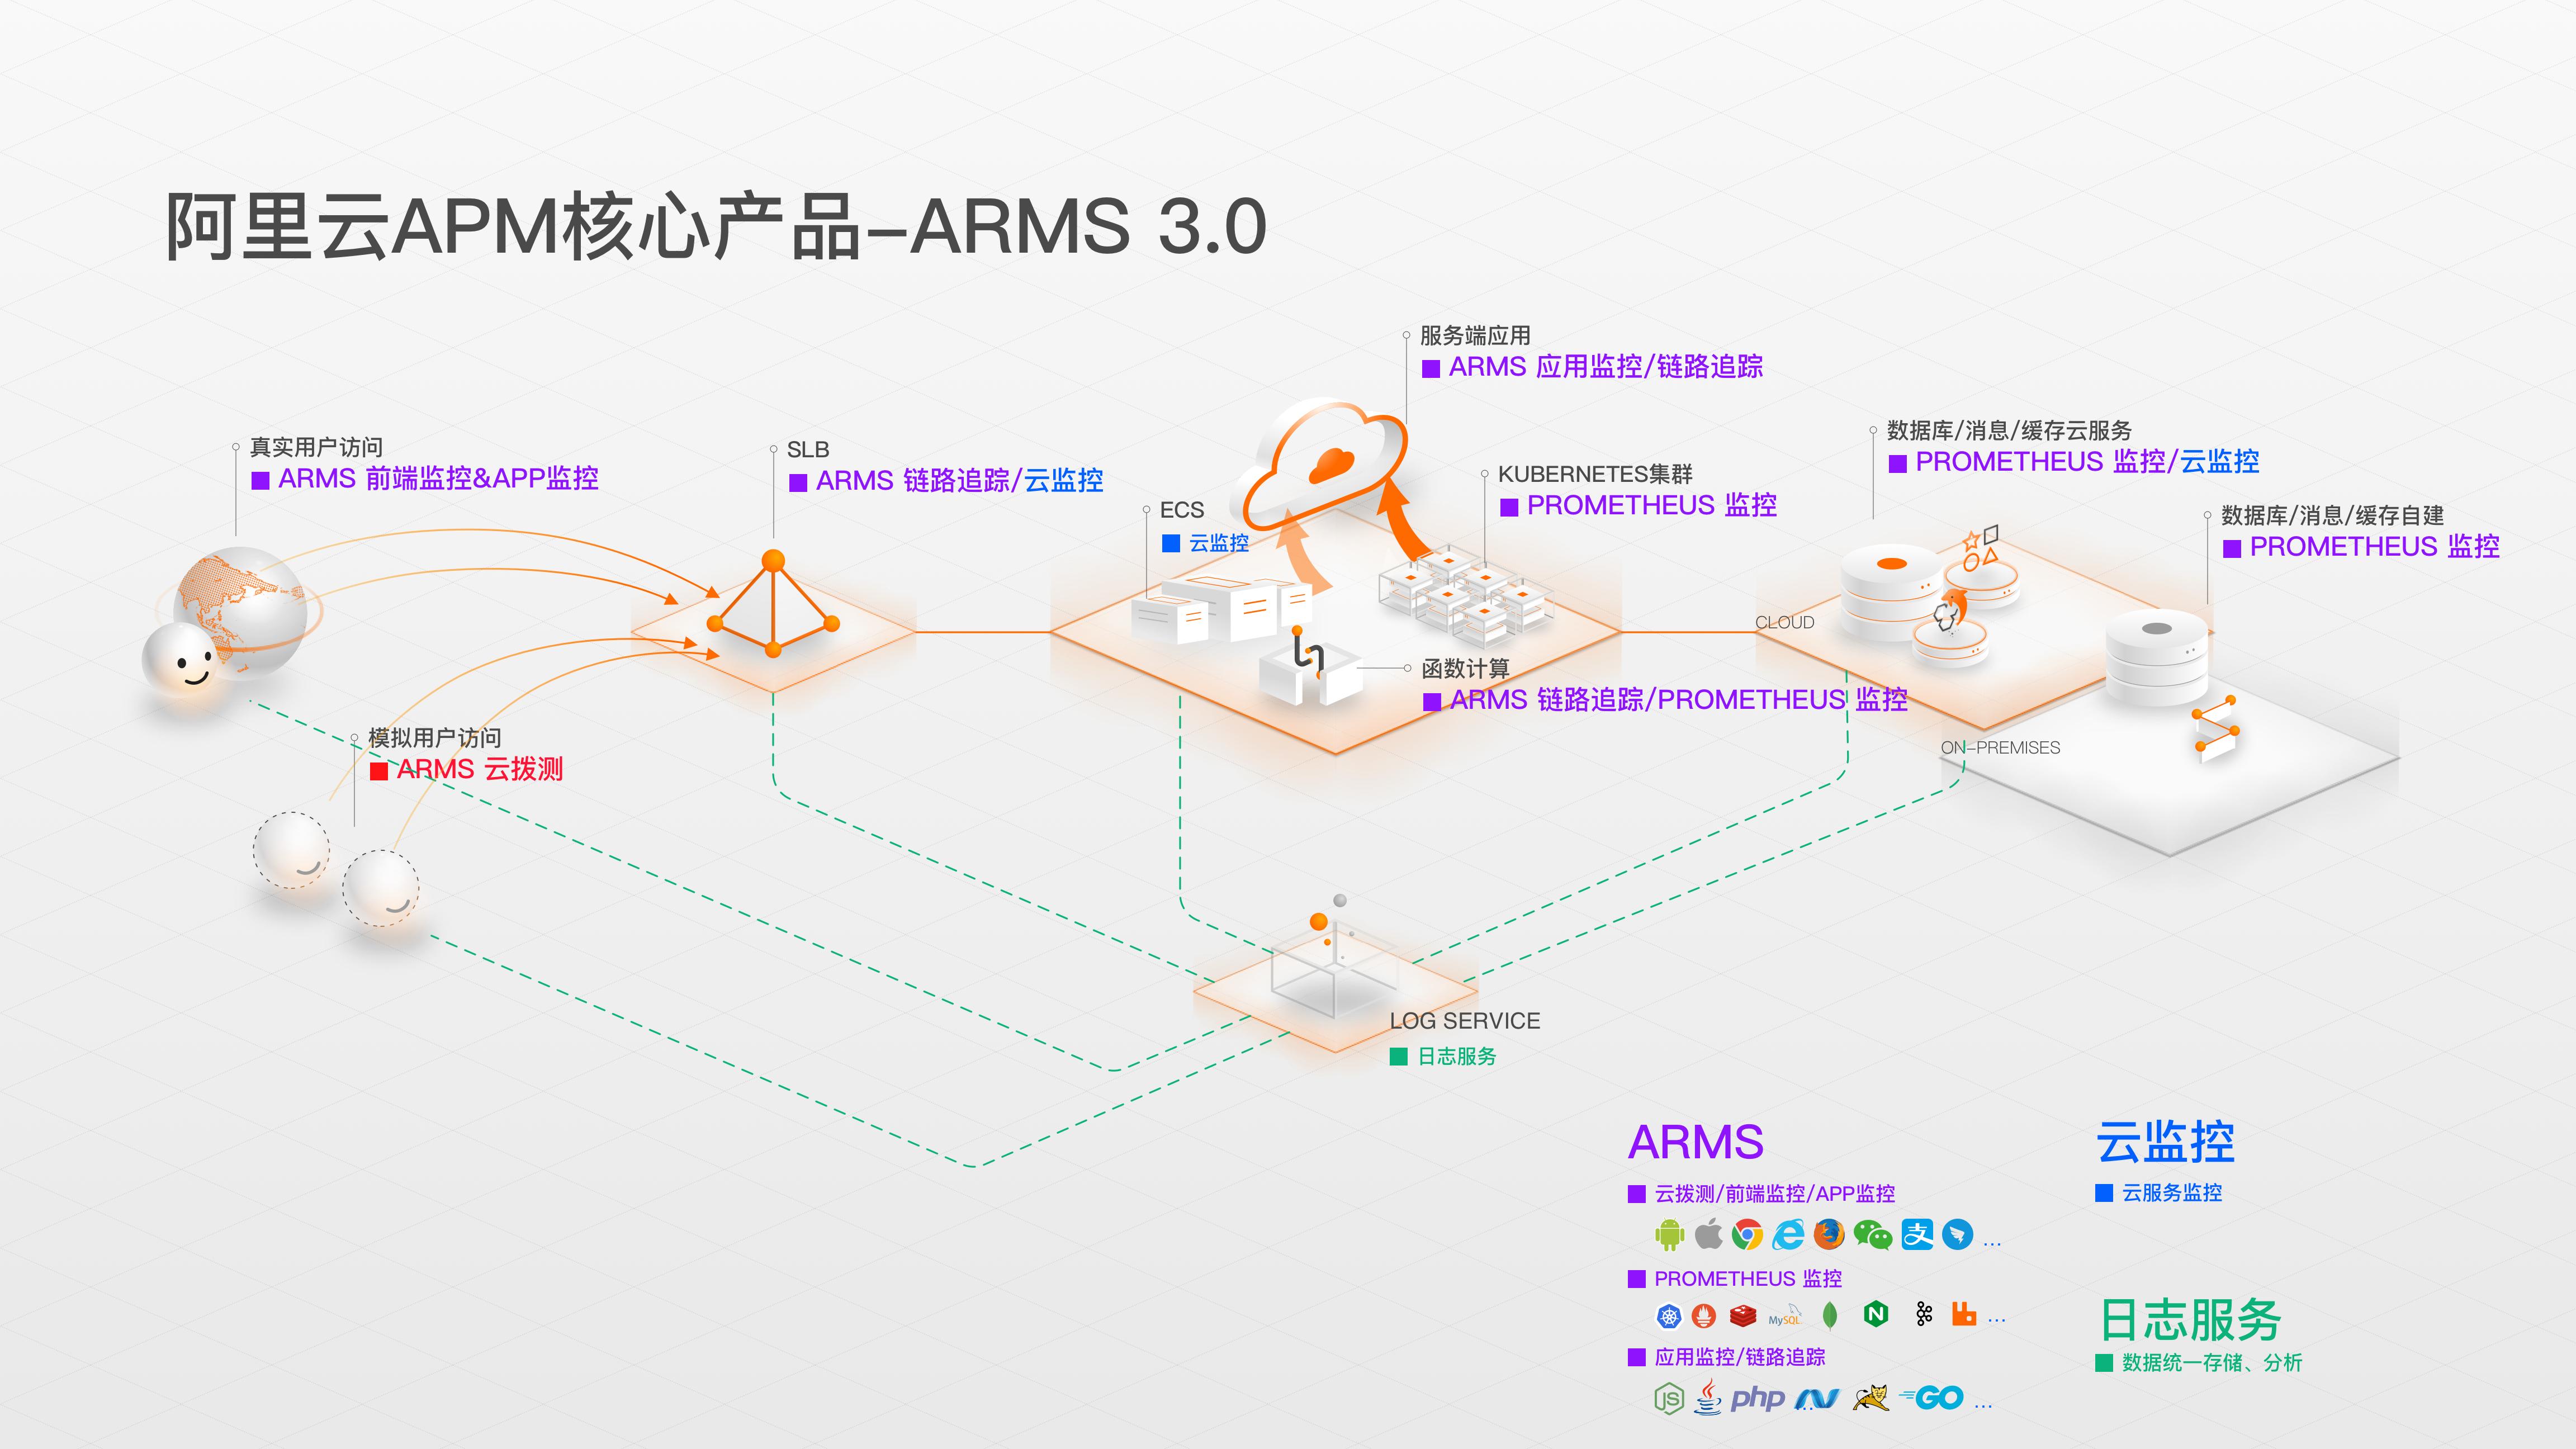 阿里云 ARMS 3.0 重磅发布云拨测，Gartner APM 魔力象限产品解读